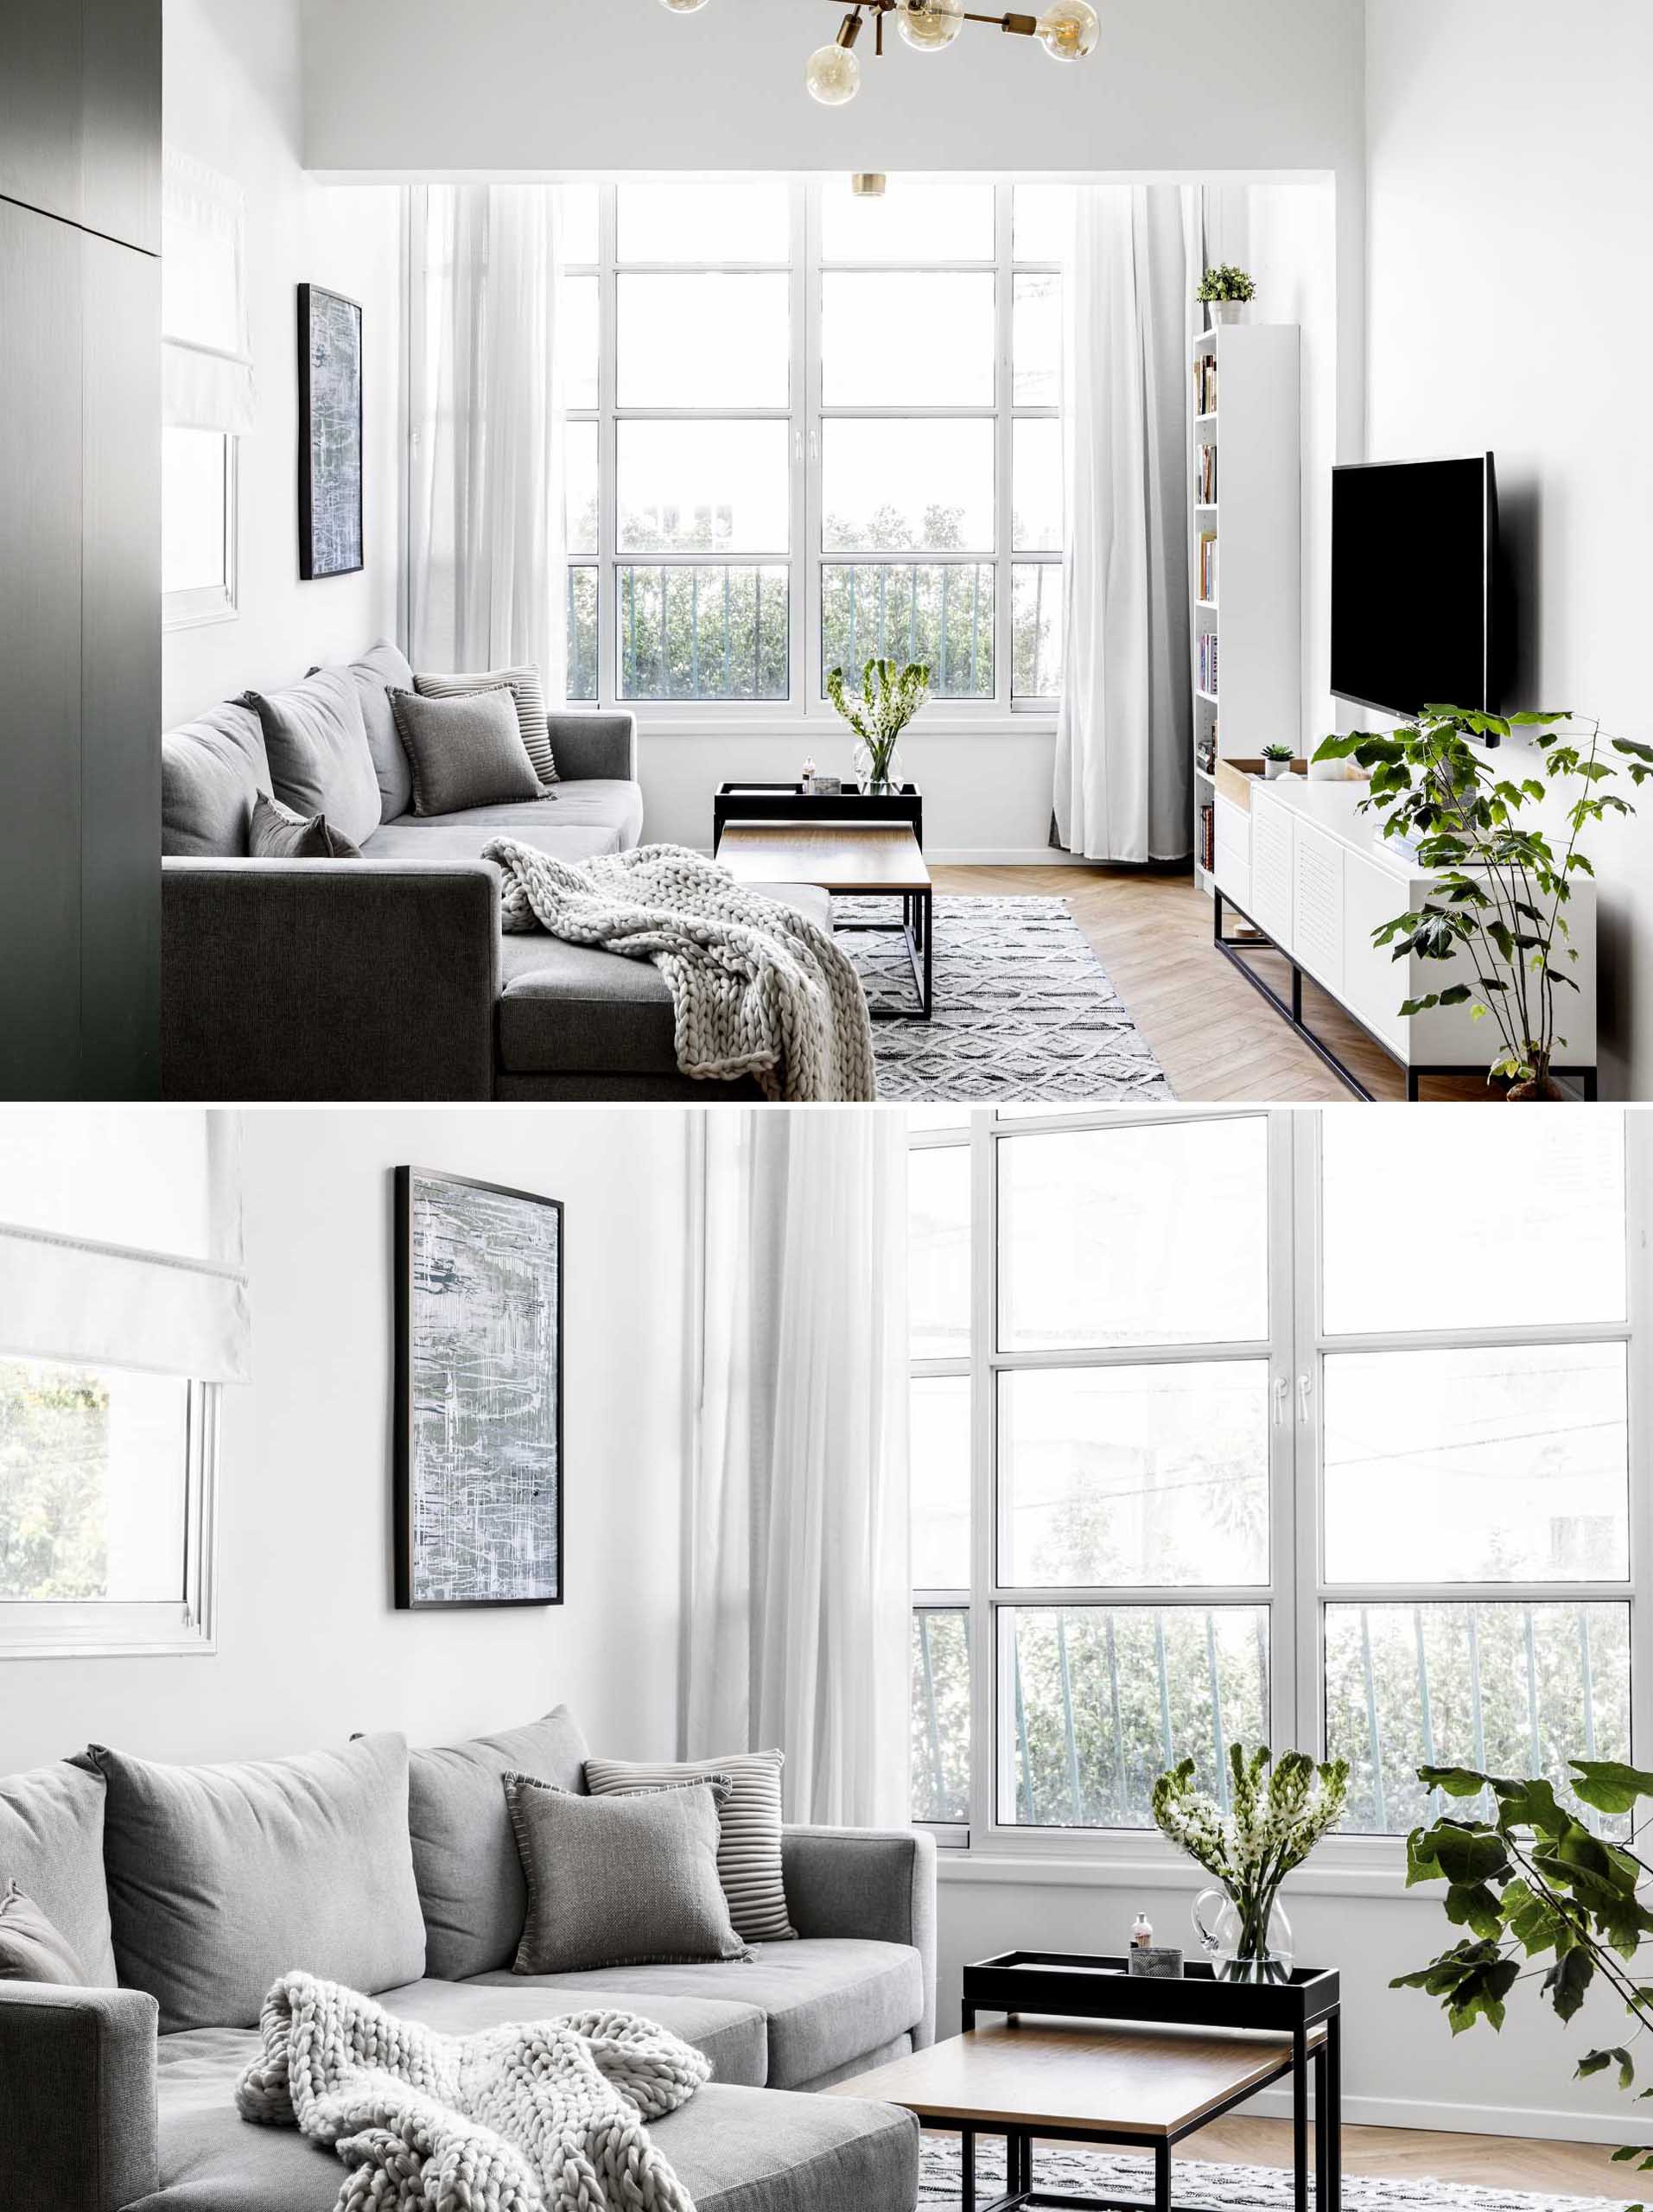 Uma sala de estar moderna com muita luz natural, um sofá cinza e plantas.